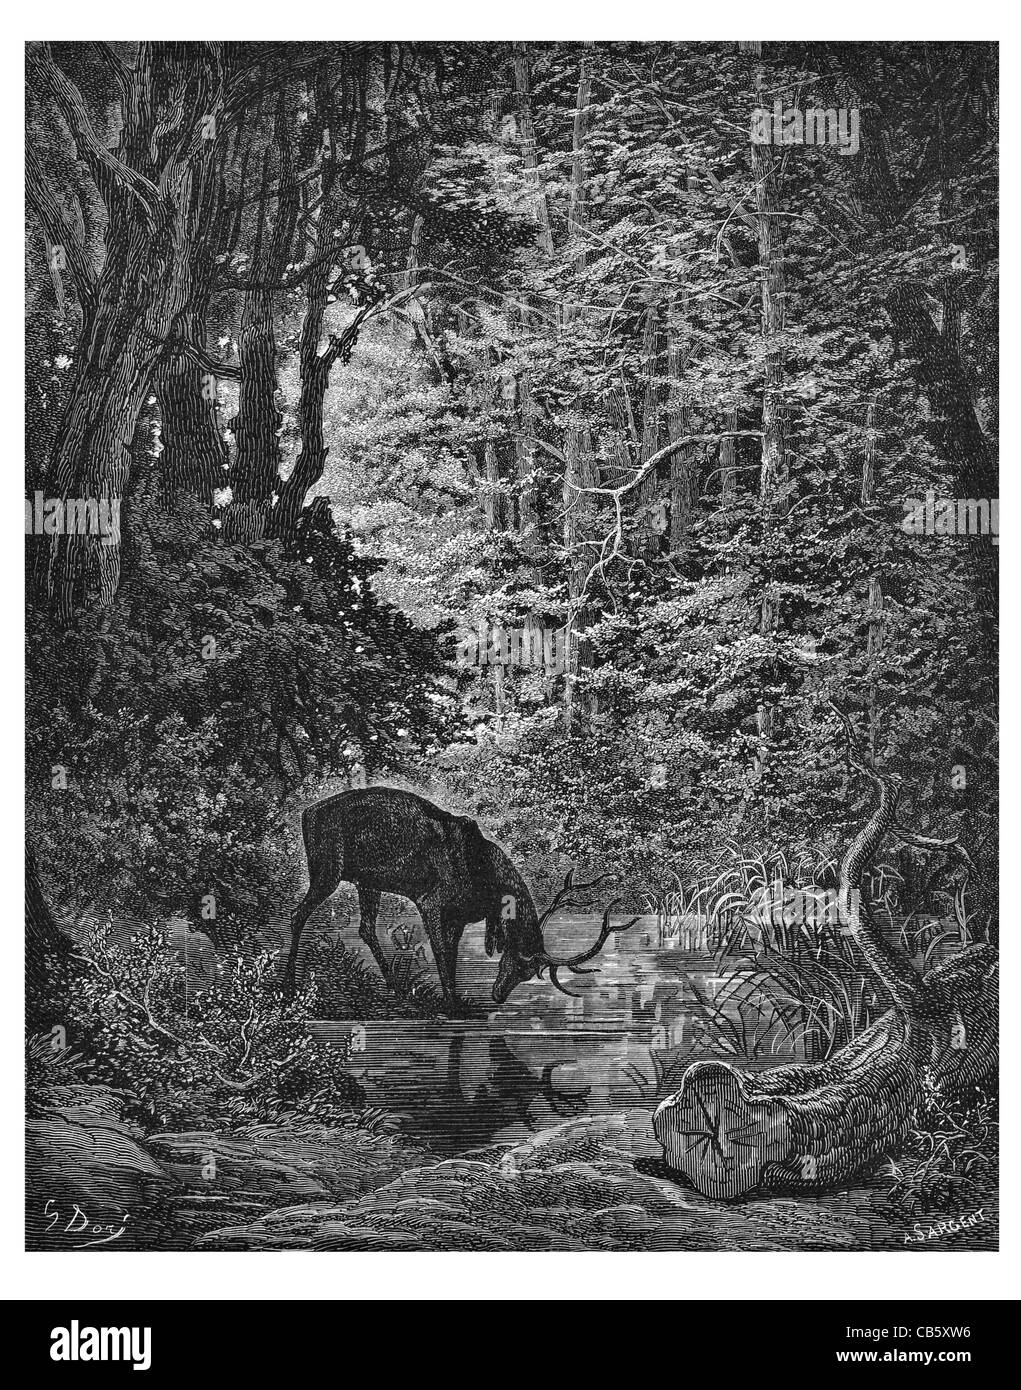 Fontaine Le cerf se voyant dans l'eau de l'étang des bois de cerf cerf réflexion bois nature sauvage de la faune forestière miroir proies woods Banque D'Images